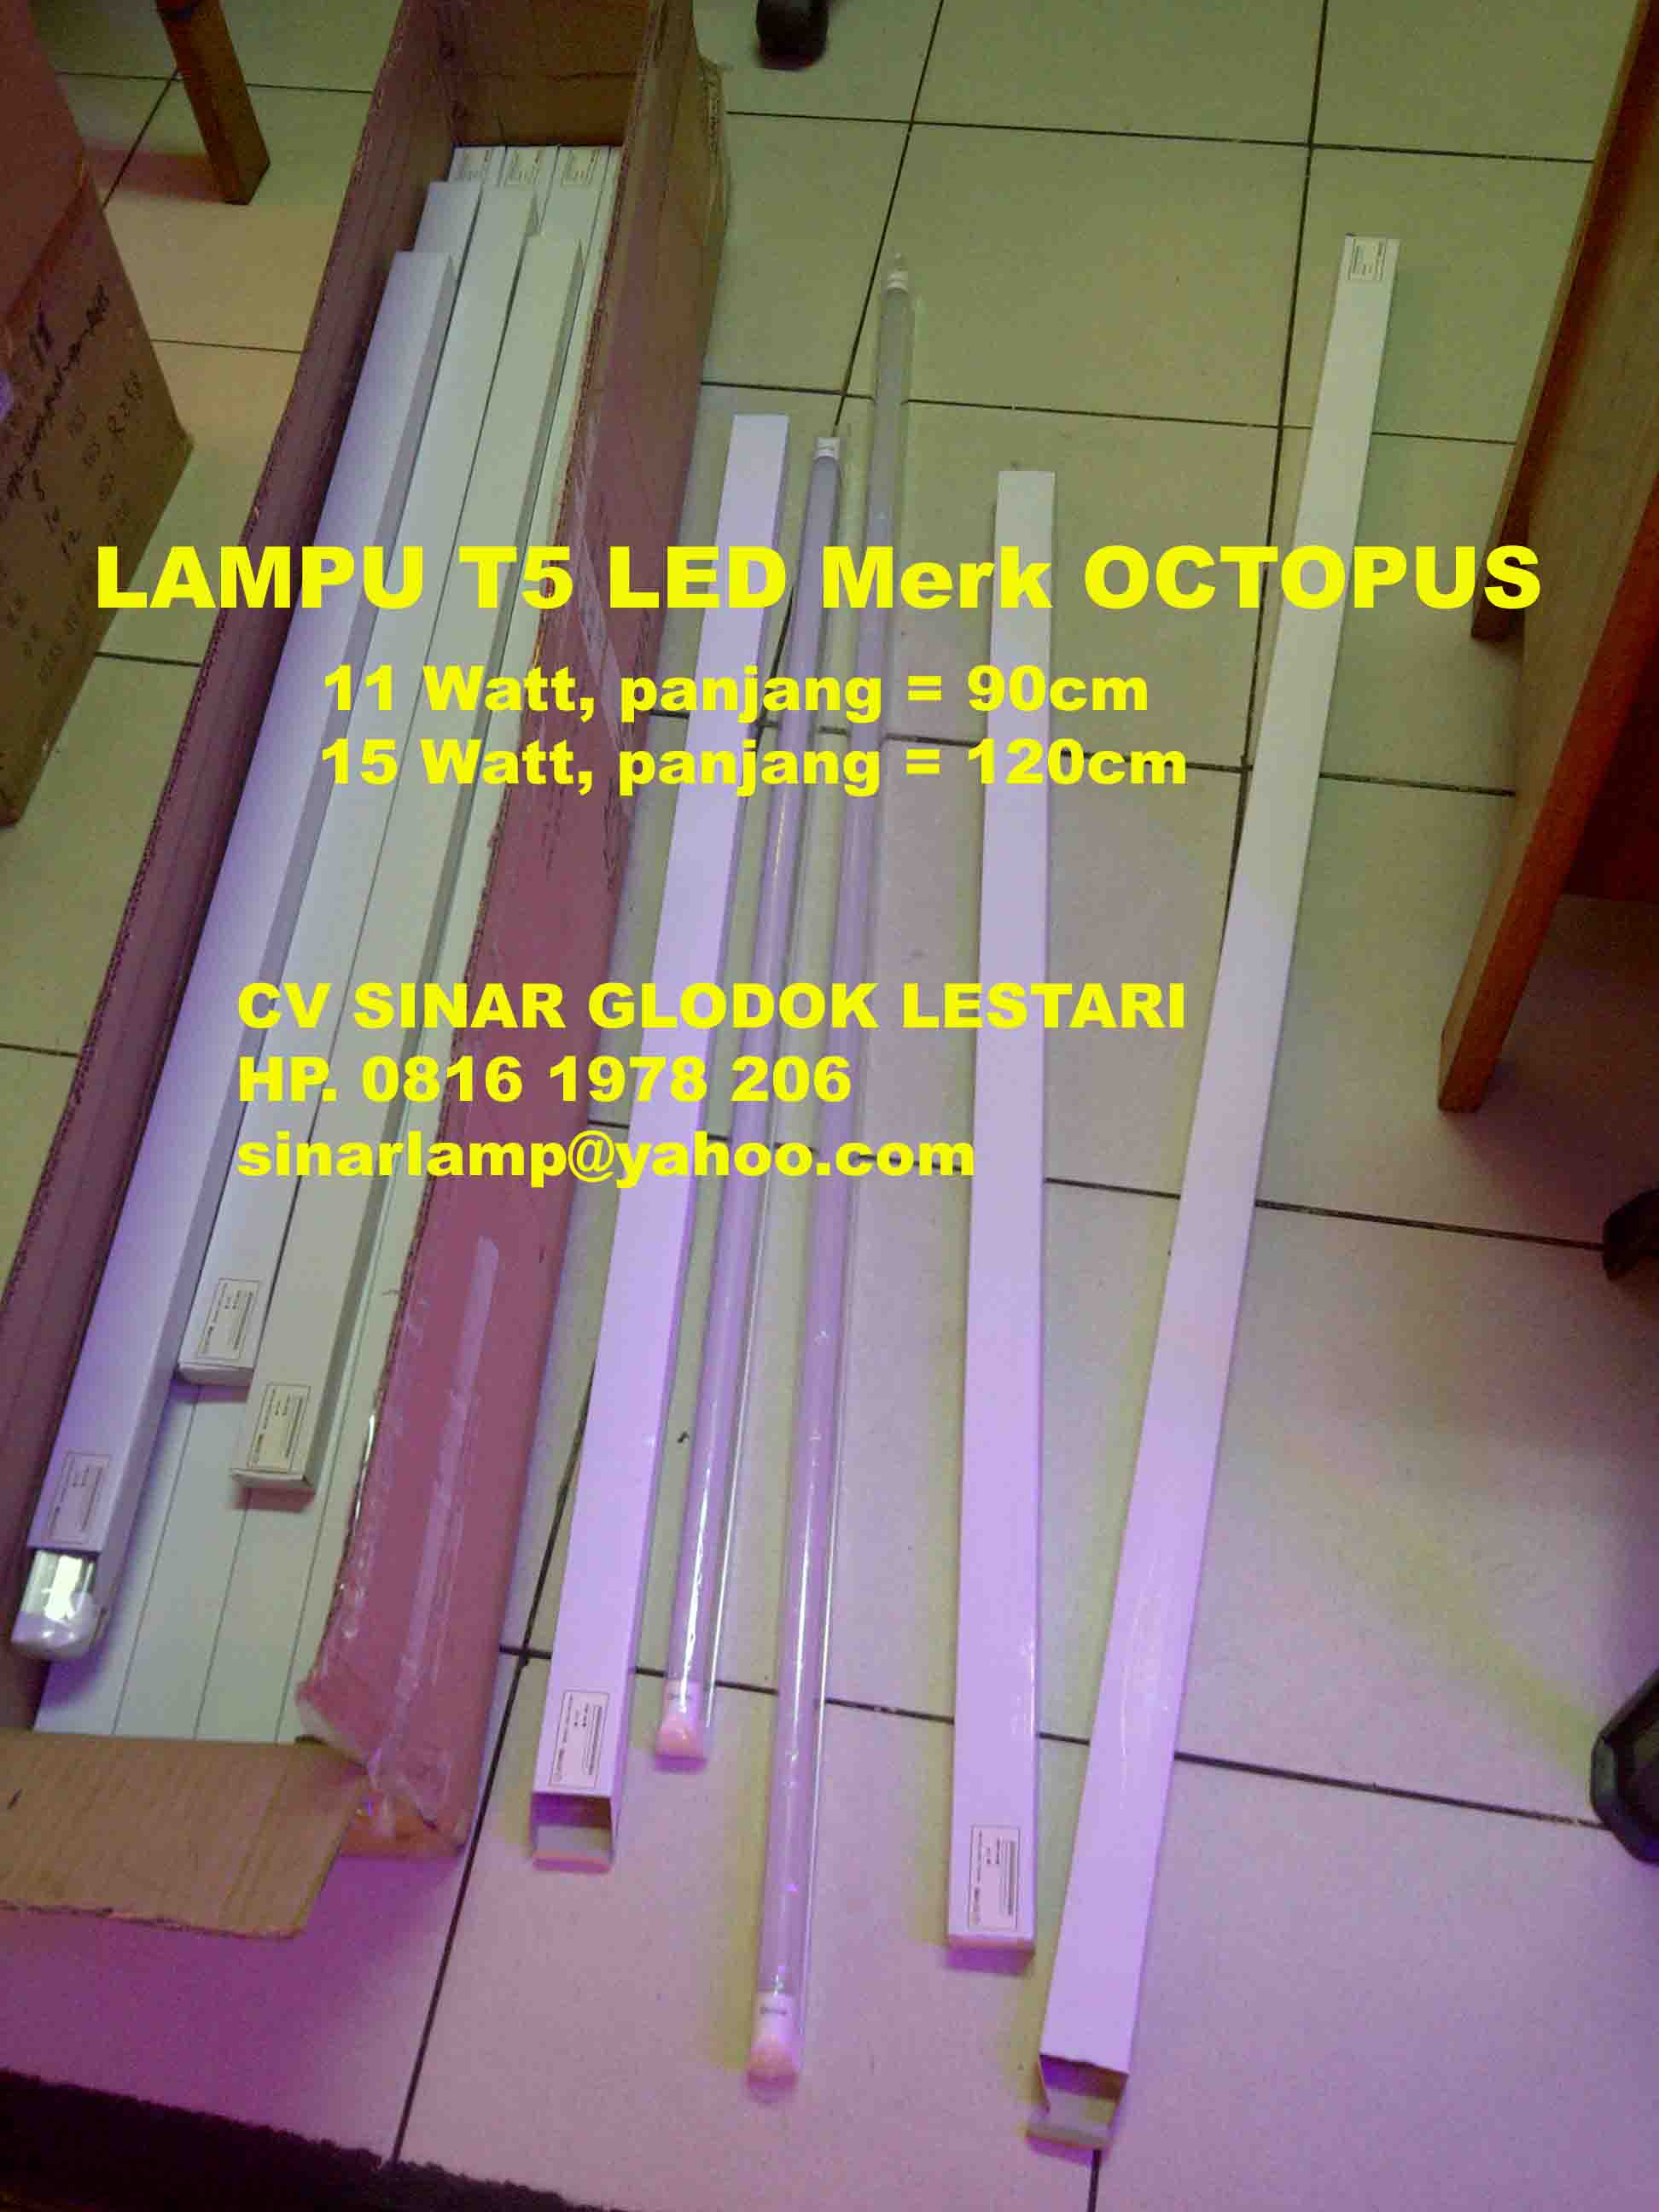 Aneka Lampu LED Lampu T5 LED 15W Dan 11W Merk OCTOPUS